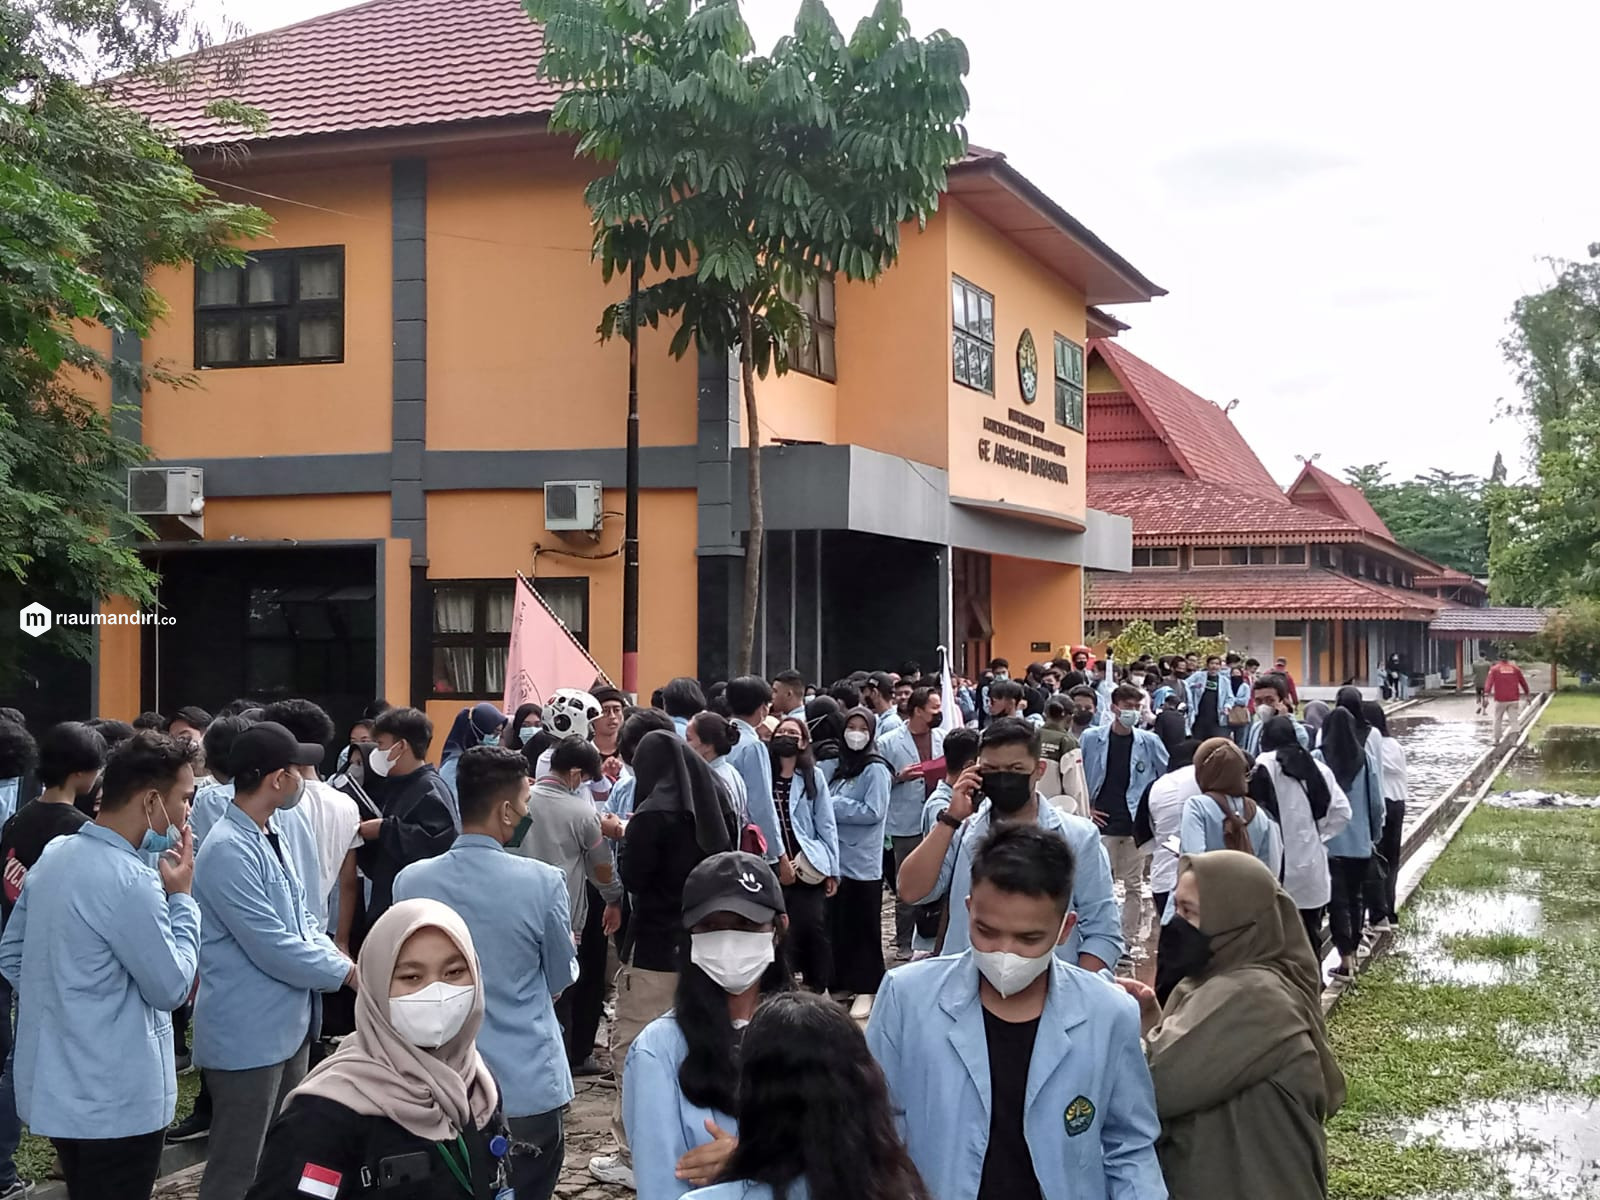 Mahasiswa UNRI Demo Tuntut Pelaku Pelecehan Seksual Diadili, Kampus Lain Ikut Ramaikan